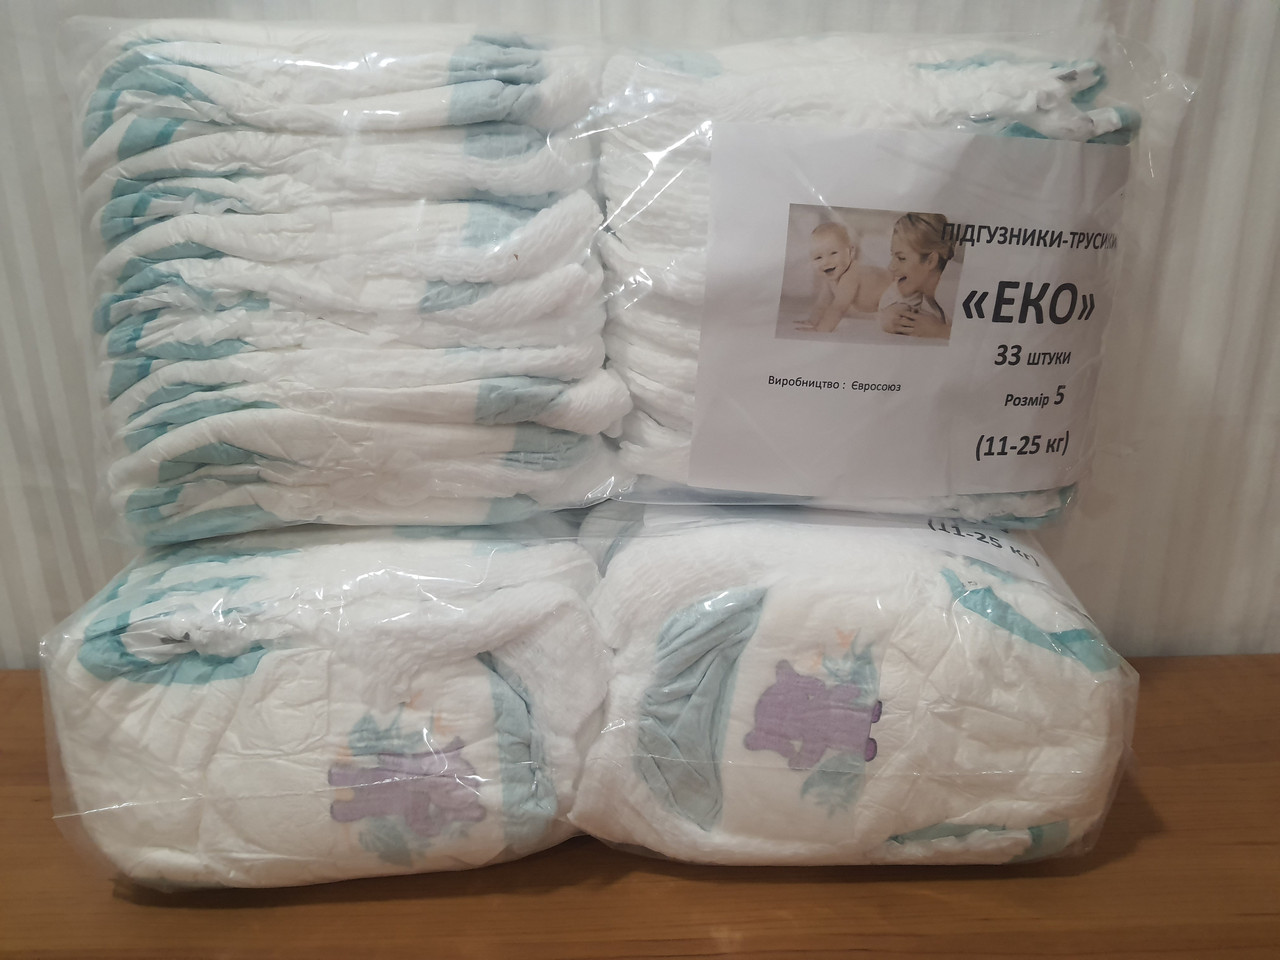 

Подгузники-трусики ЕКО размер 5 (11-25 кг.) в упаковке 33 шт, подгузники детские